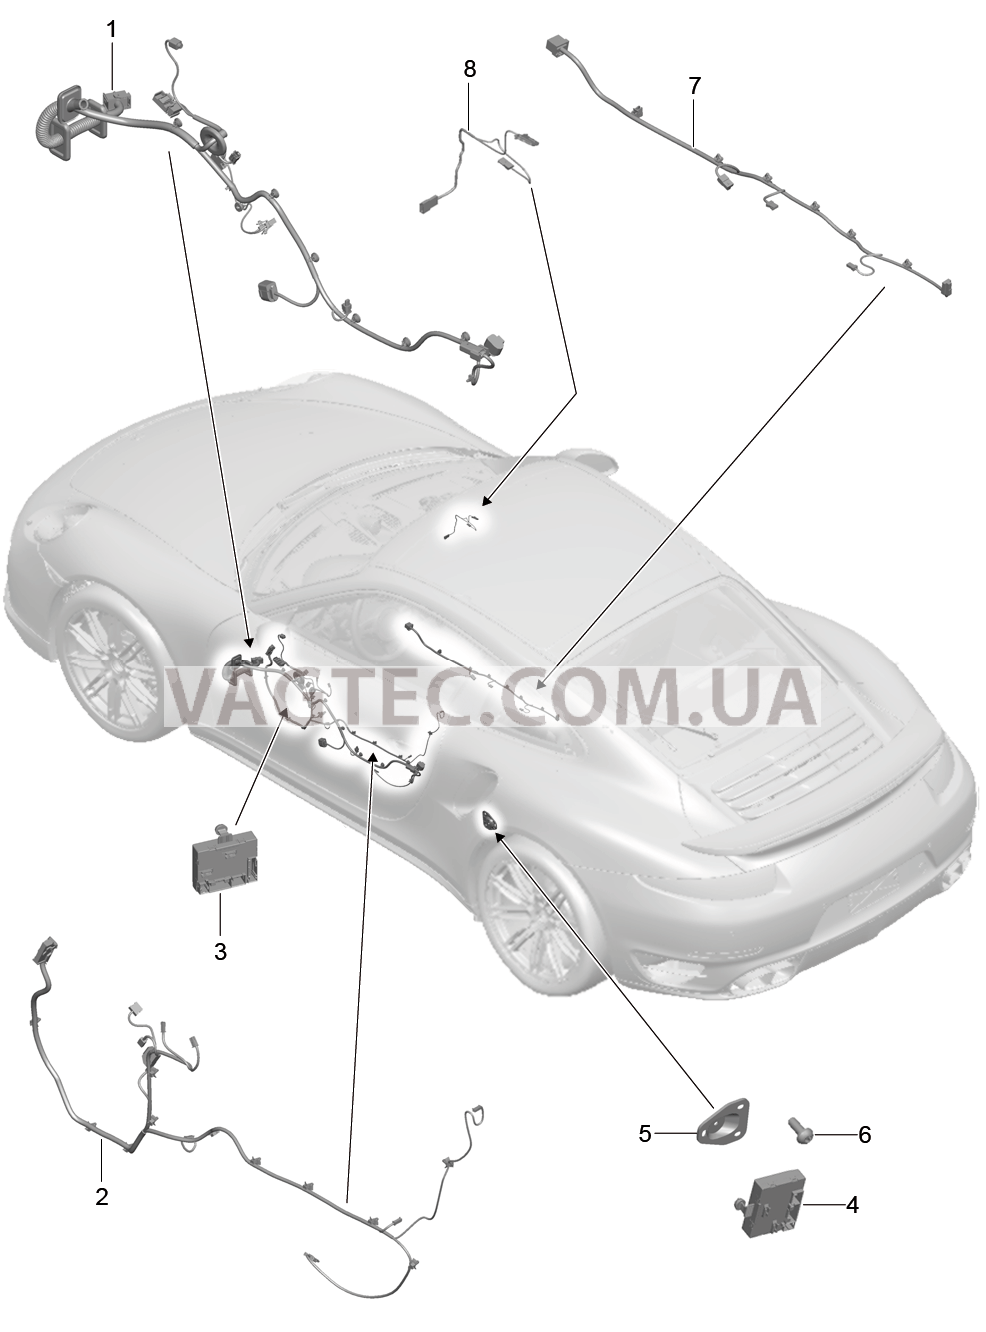 902-016 Жгуты проводов, Двери, Центральная консоль, Блок управления, Двери, Управление складным верхом для PORSCHE Porsche991Turbo 2014-2017